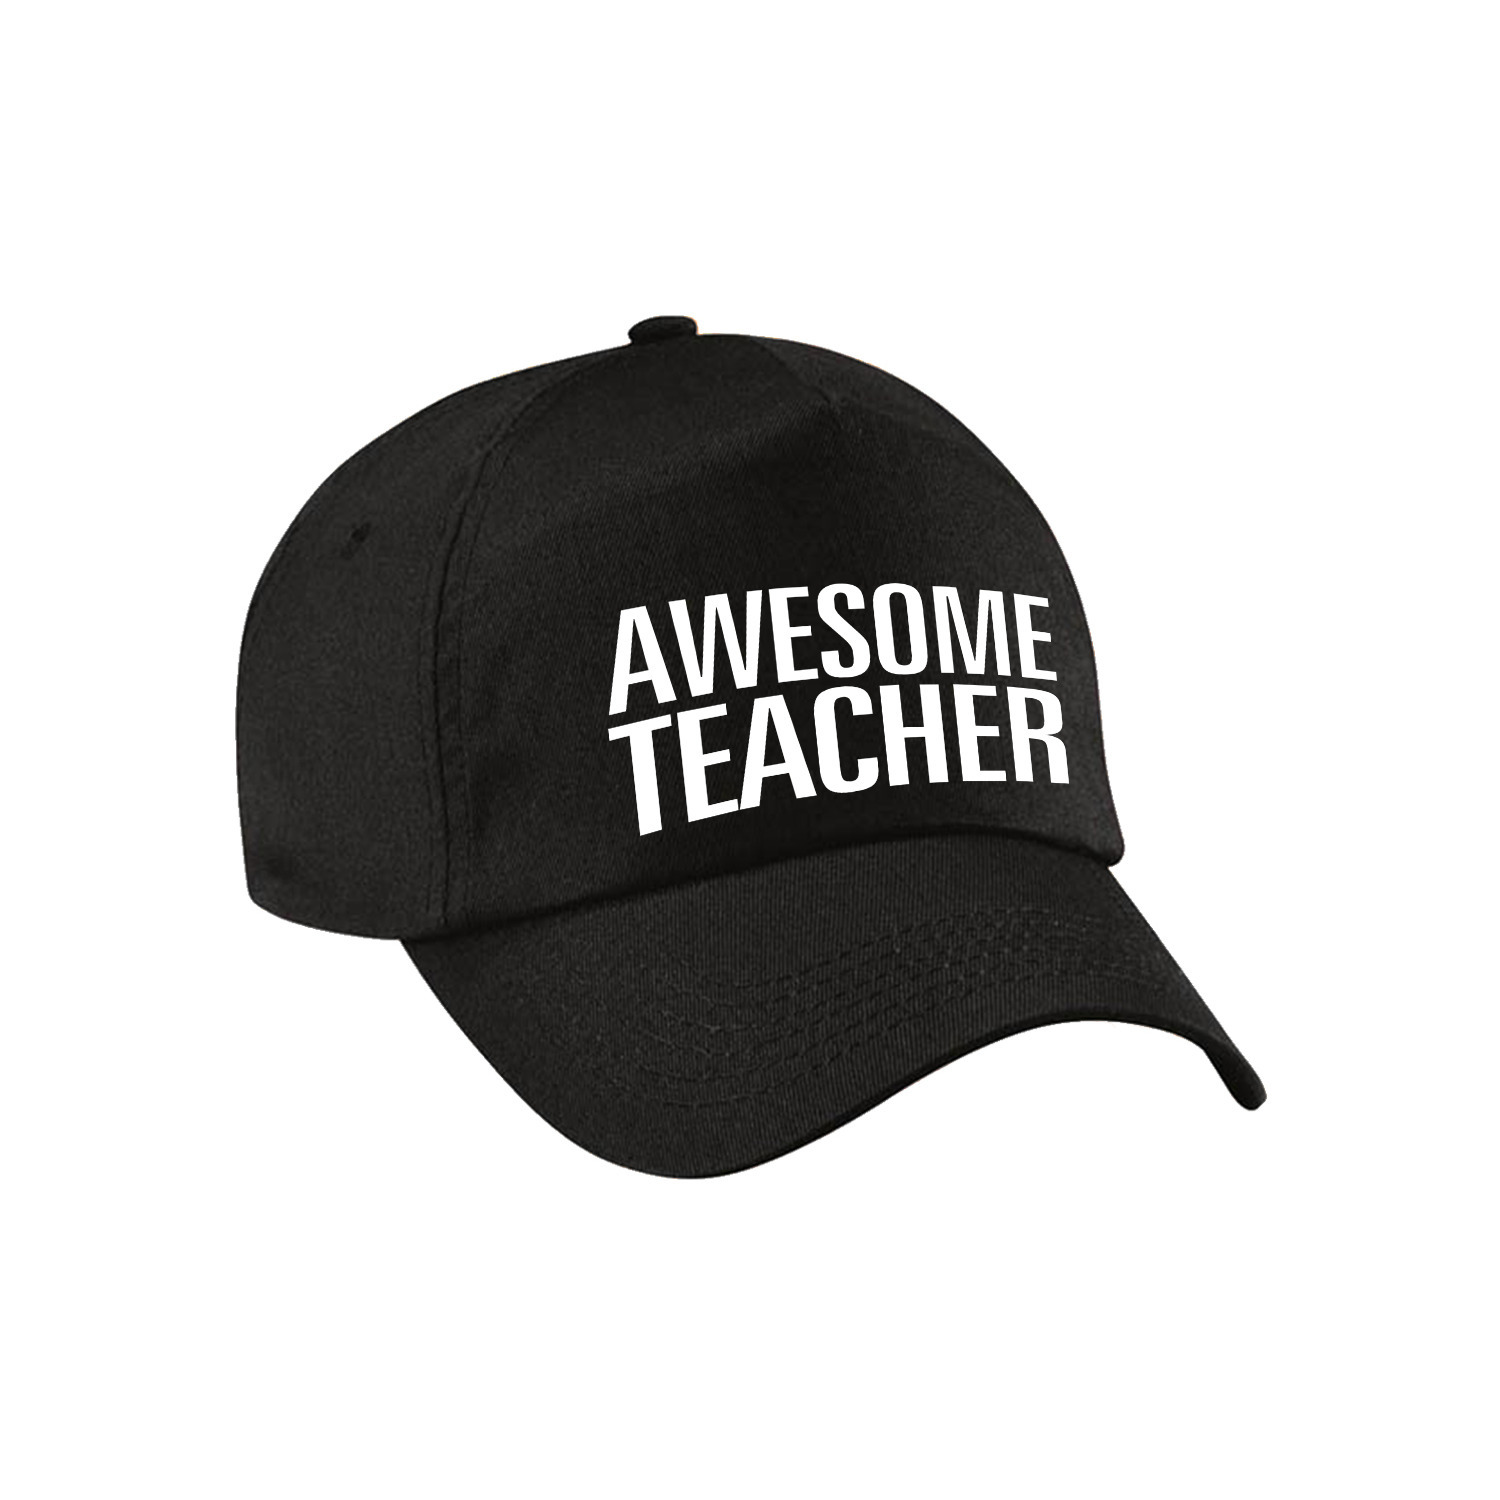 Awesome teacher pet / cap voor leraar / lerares zwart voor dames en heren Top Merken Winkel